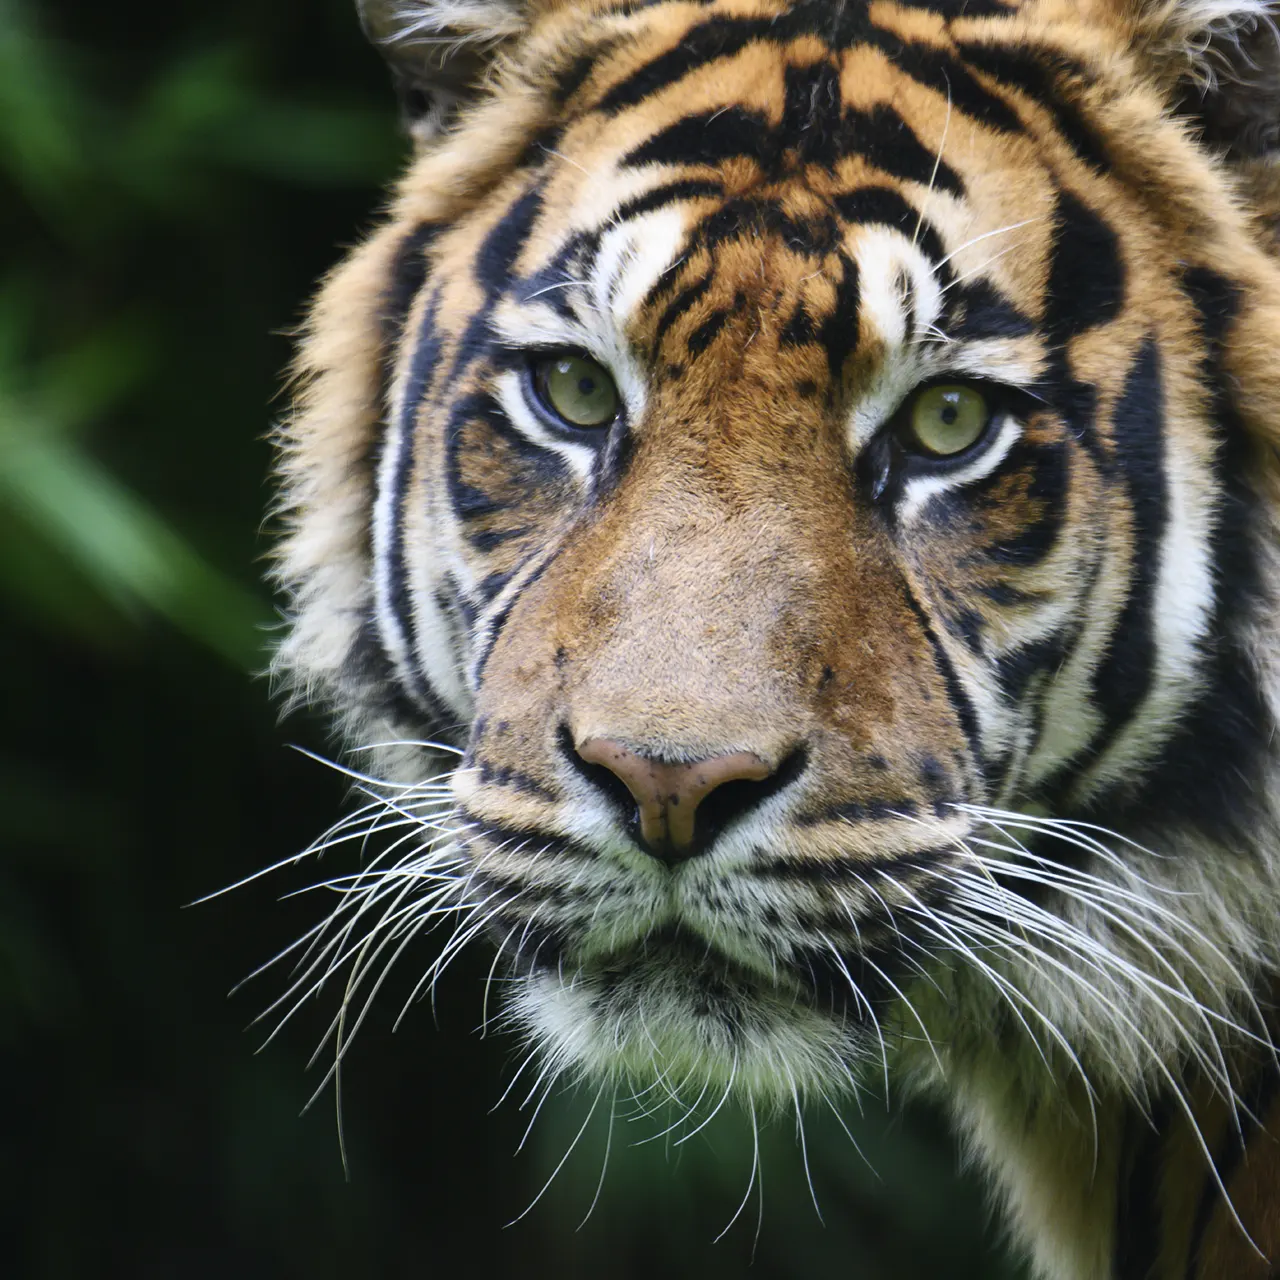 Tiger Portrait. Image by Edo Emmerig from Pixabay